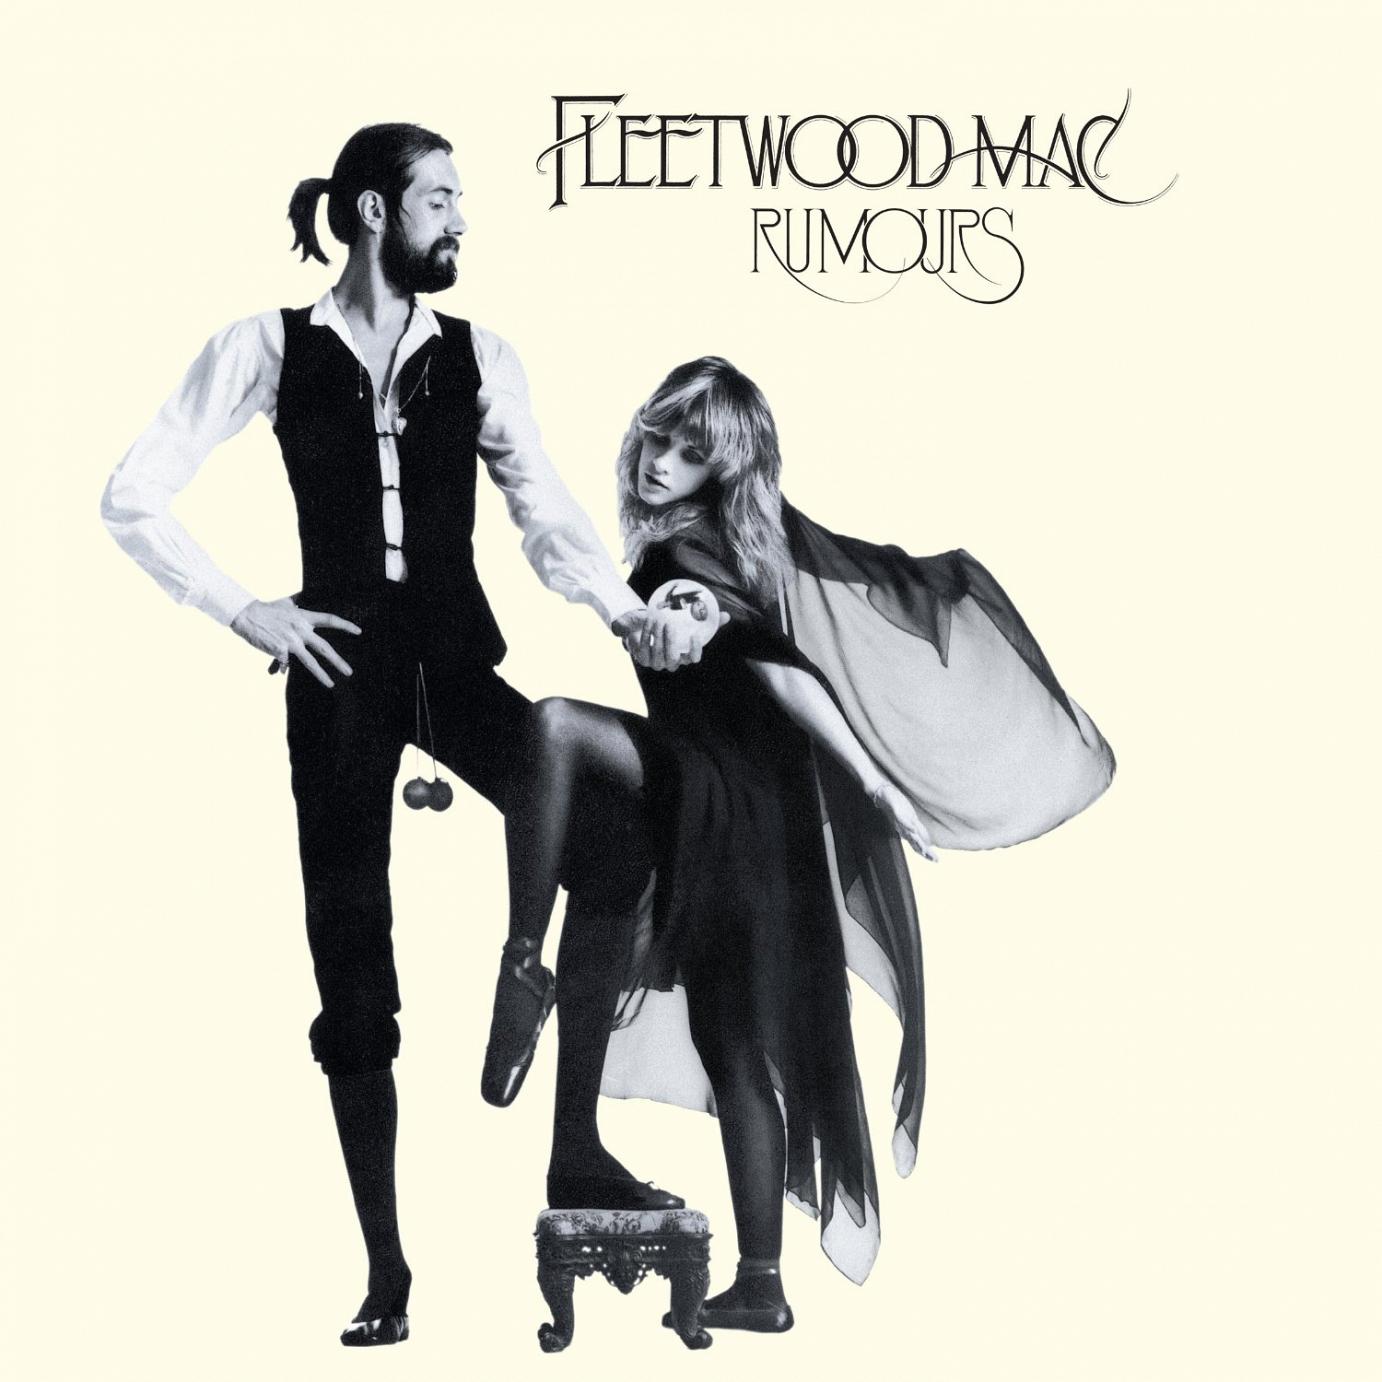 Das Kultalbum “Rumours” von Fleetwood Mac wird zum Jubiläum als “35th Anniversary Edition” neu veröffentlicht